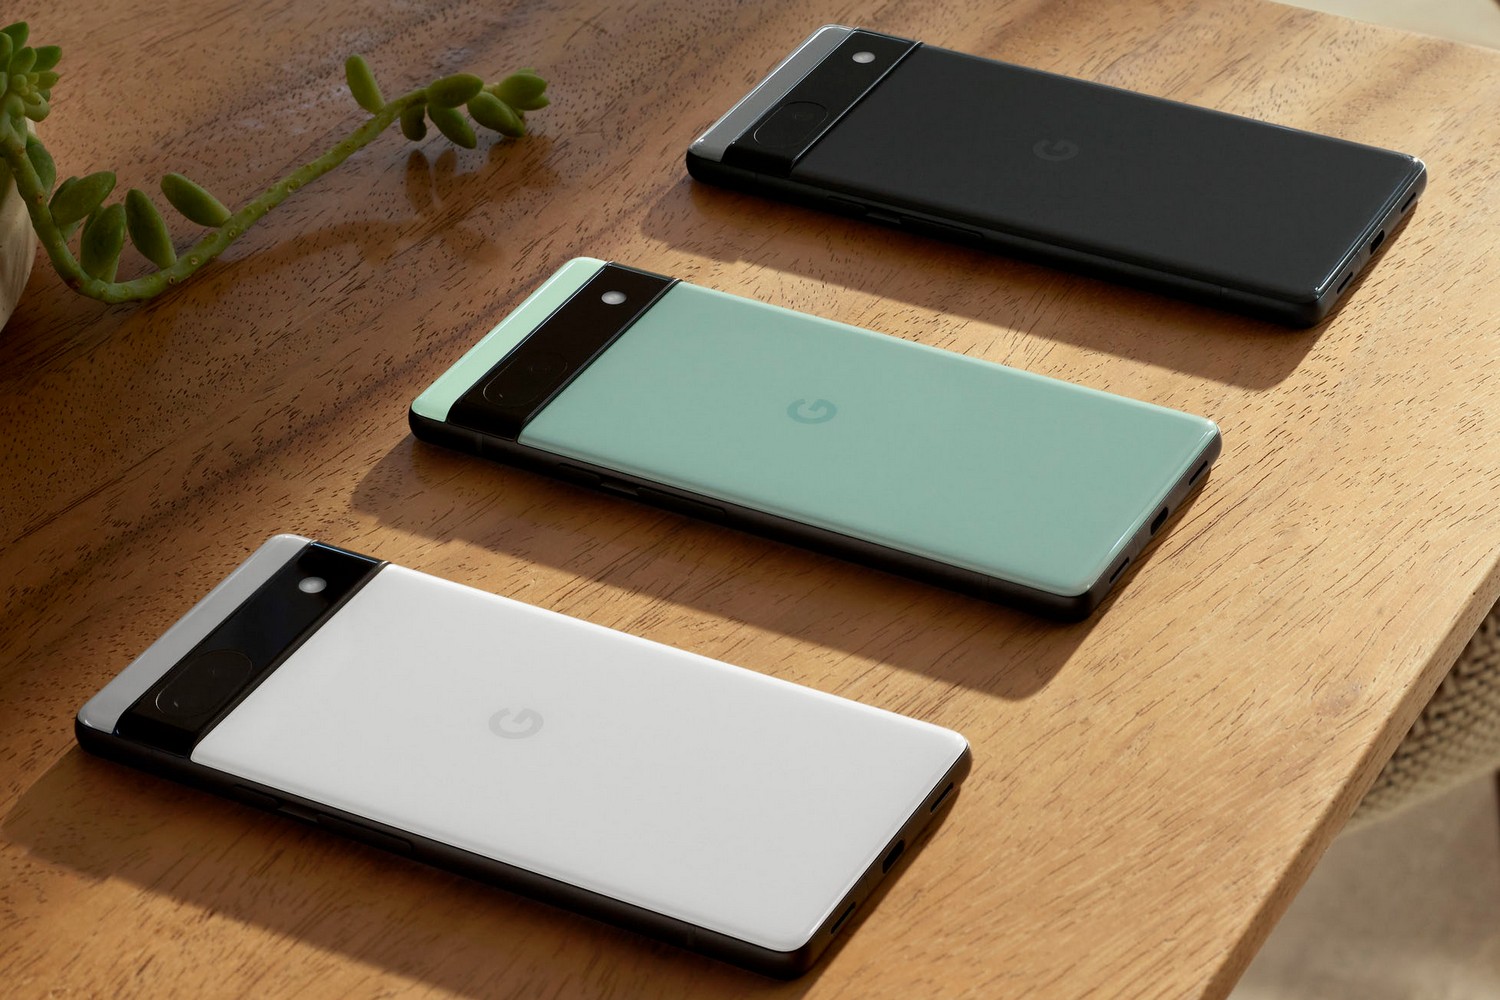 سه گوشی هوشمند Google Pixel 6a در سه رنگ رو به پایین روی یک میز قرار گرفته اند.